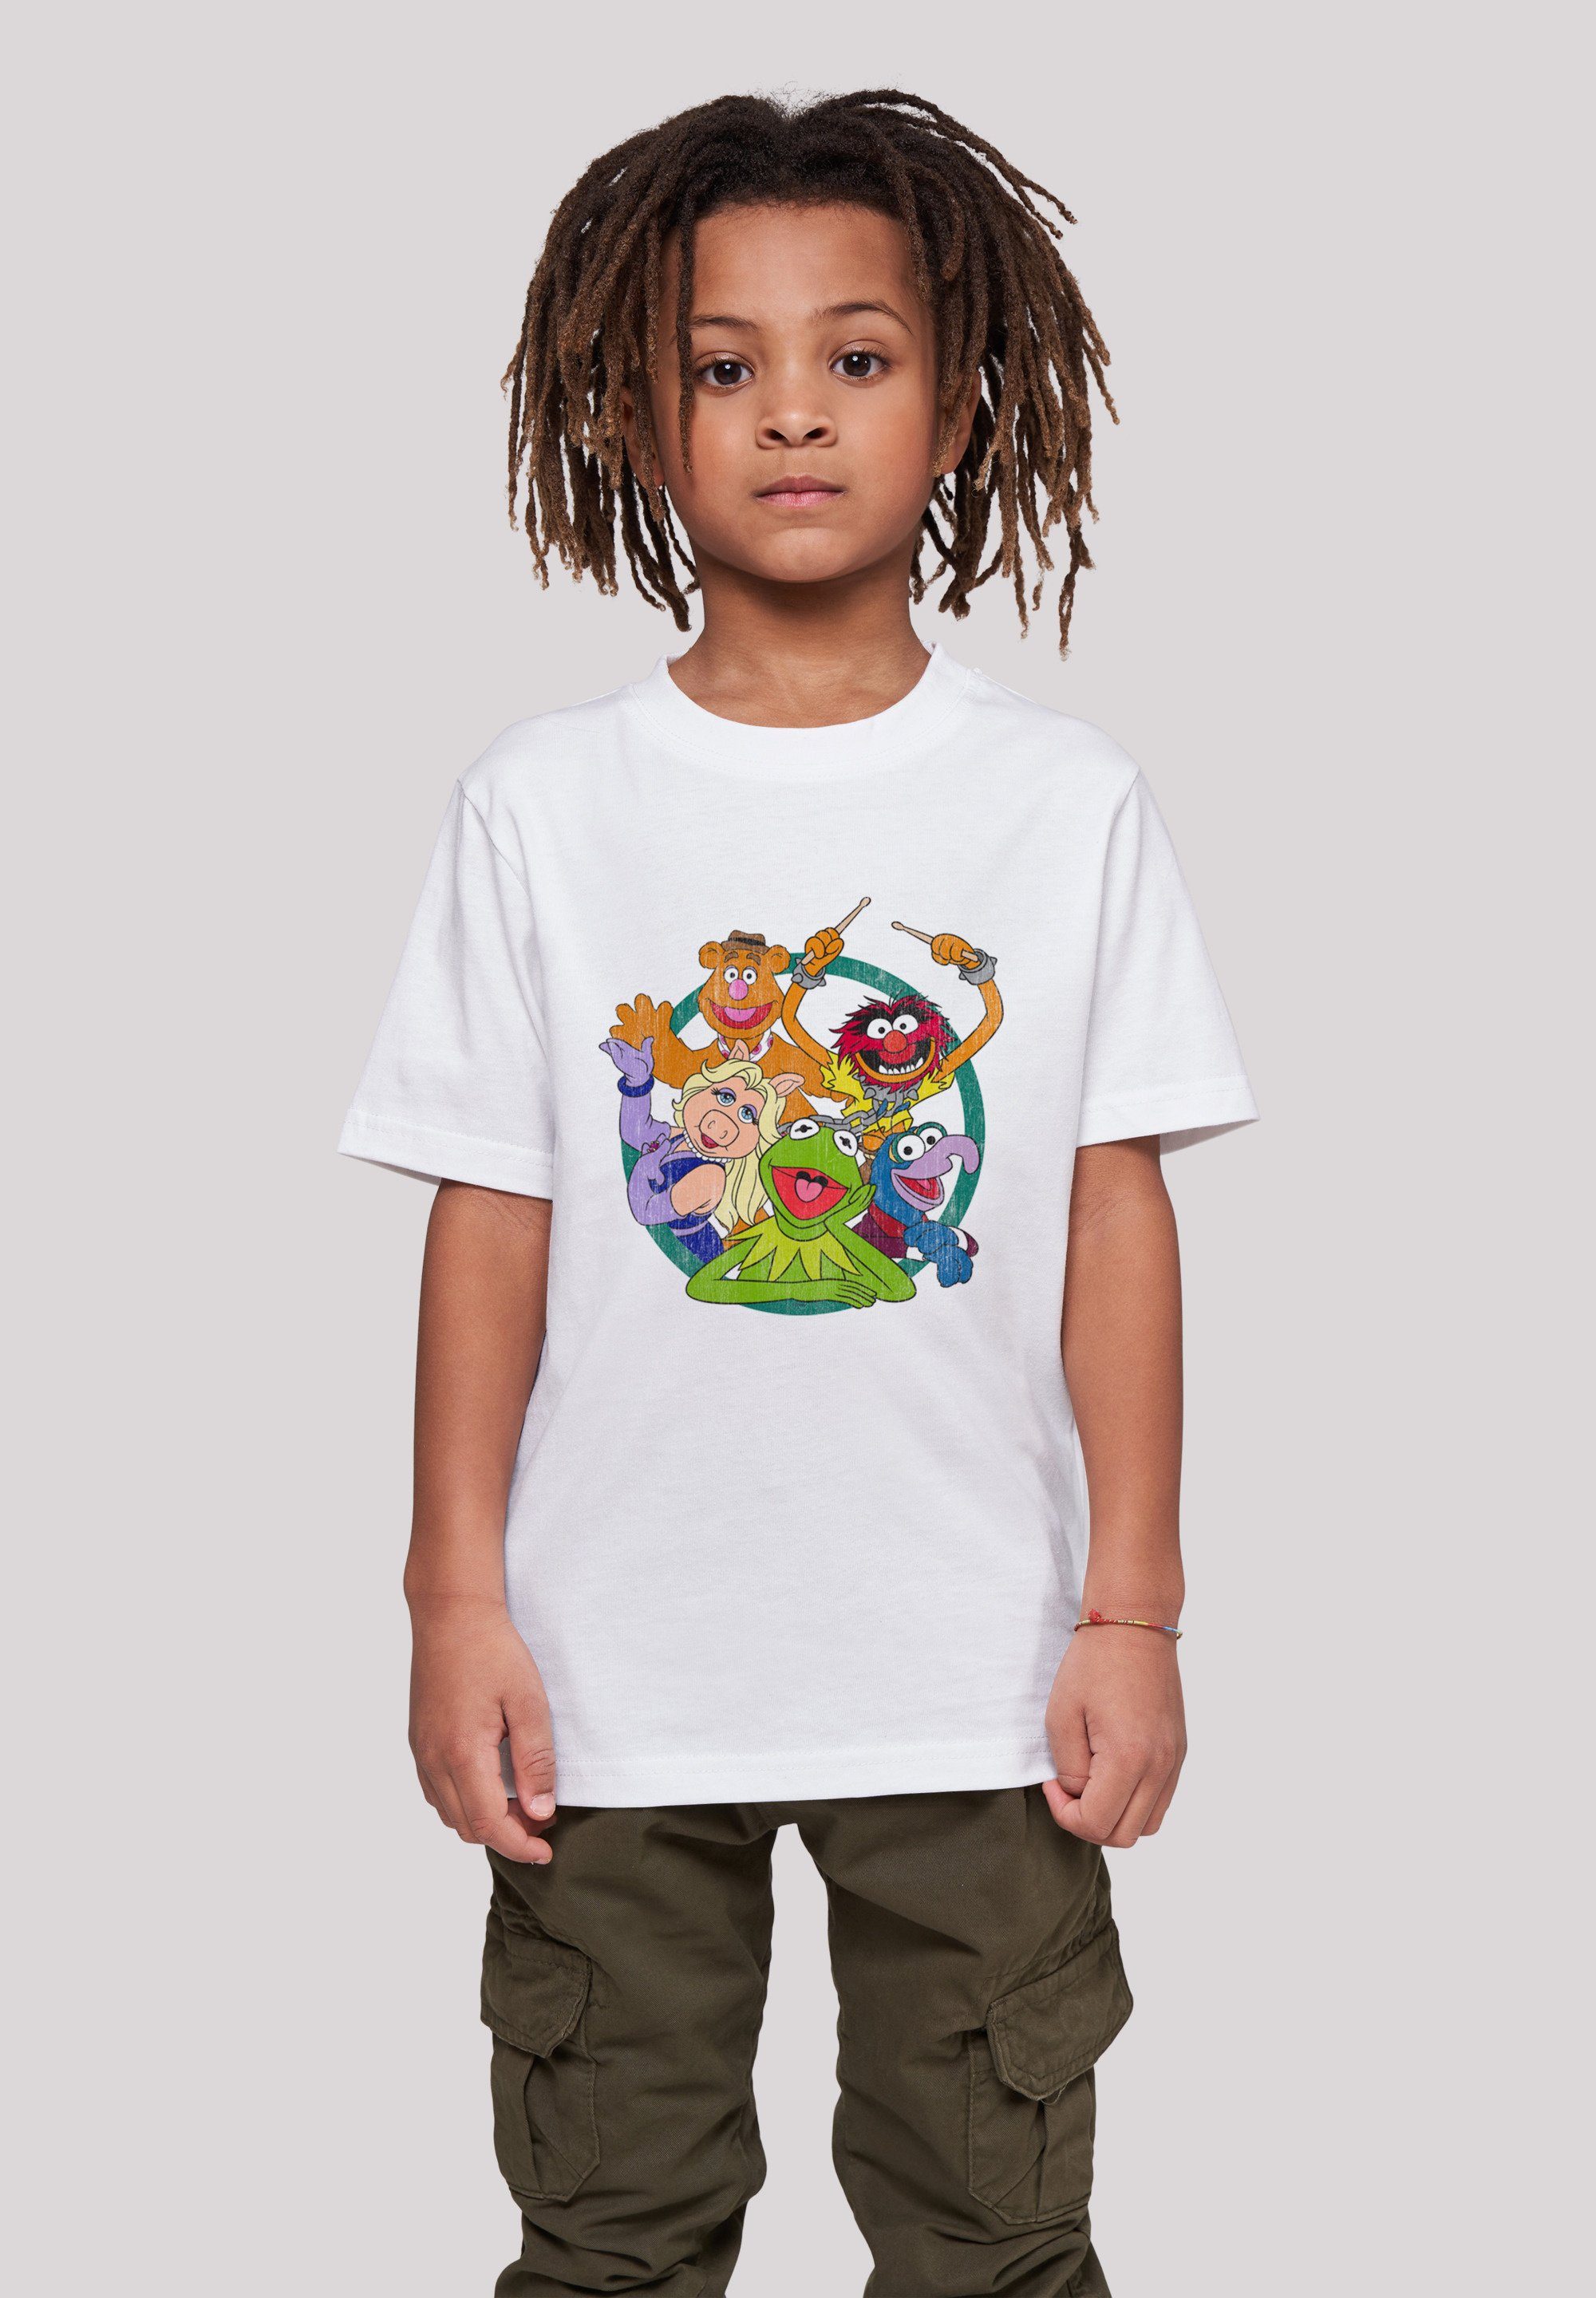 Sehr Tragekomfort Die Disney Print, Baumwollstoff Muppets F4NT4STIC Circle weicher mit Group T-Shirt hohem